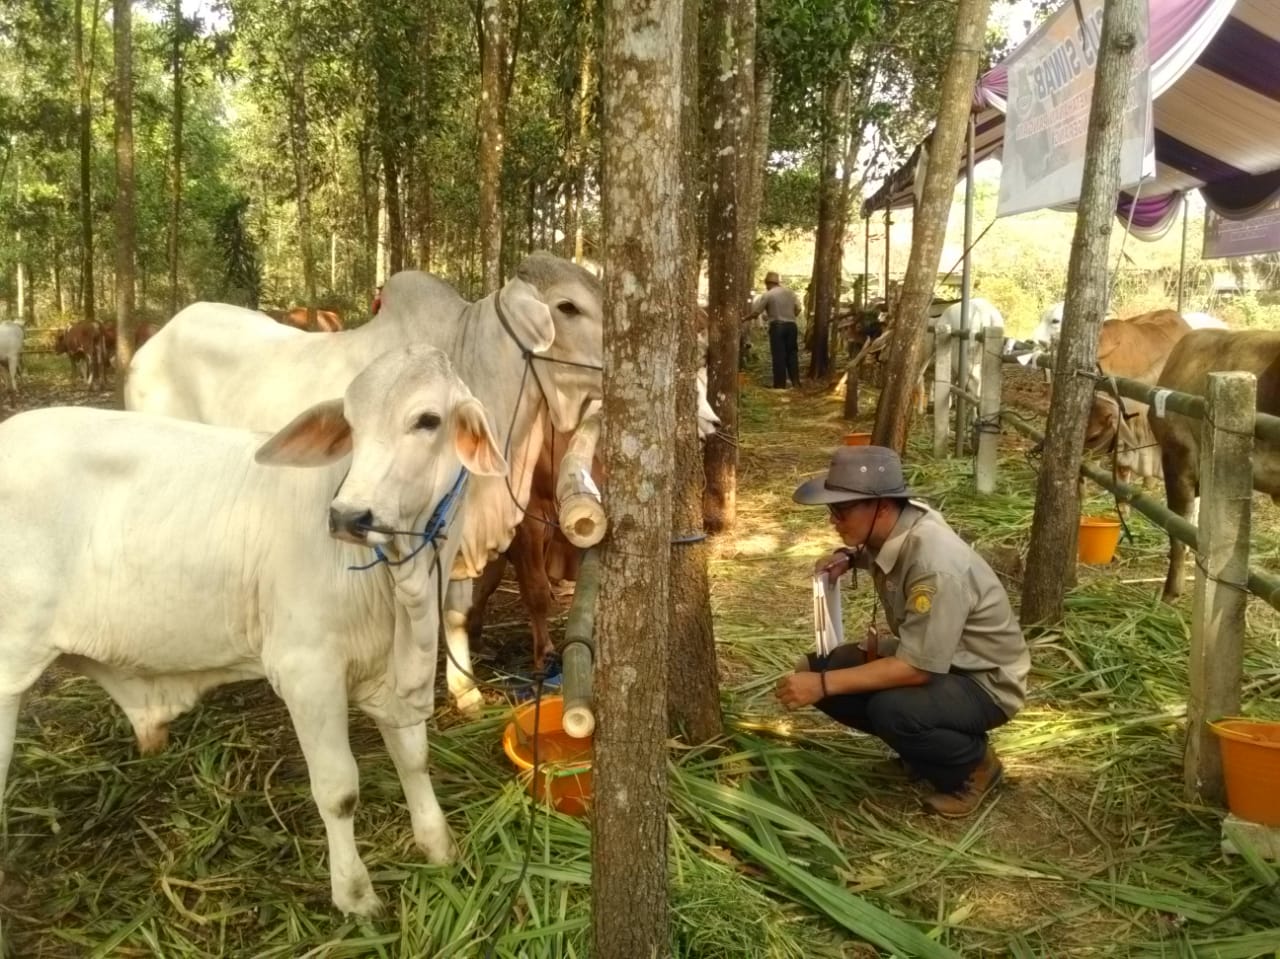 Kegiatan kontes sapi ternak di Lapangan Glupang, Desa Cileles, Kecamatan Tigaraksa, Kamis (26/9/2019).